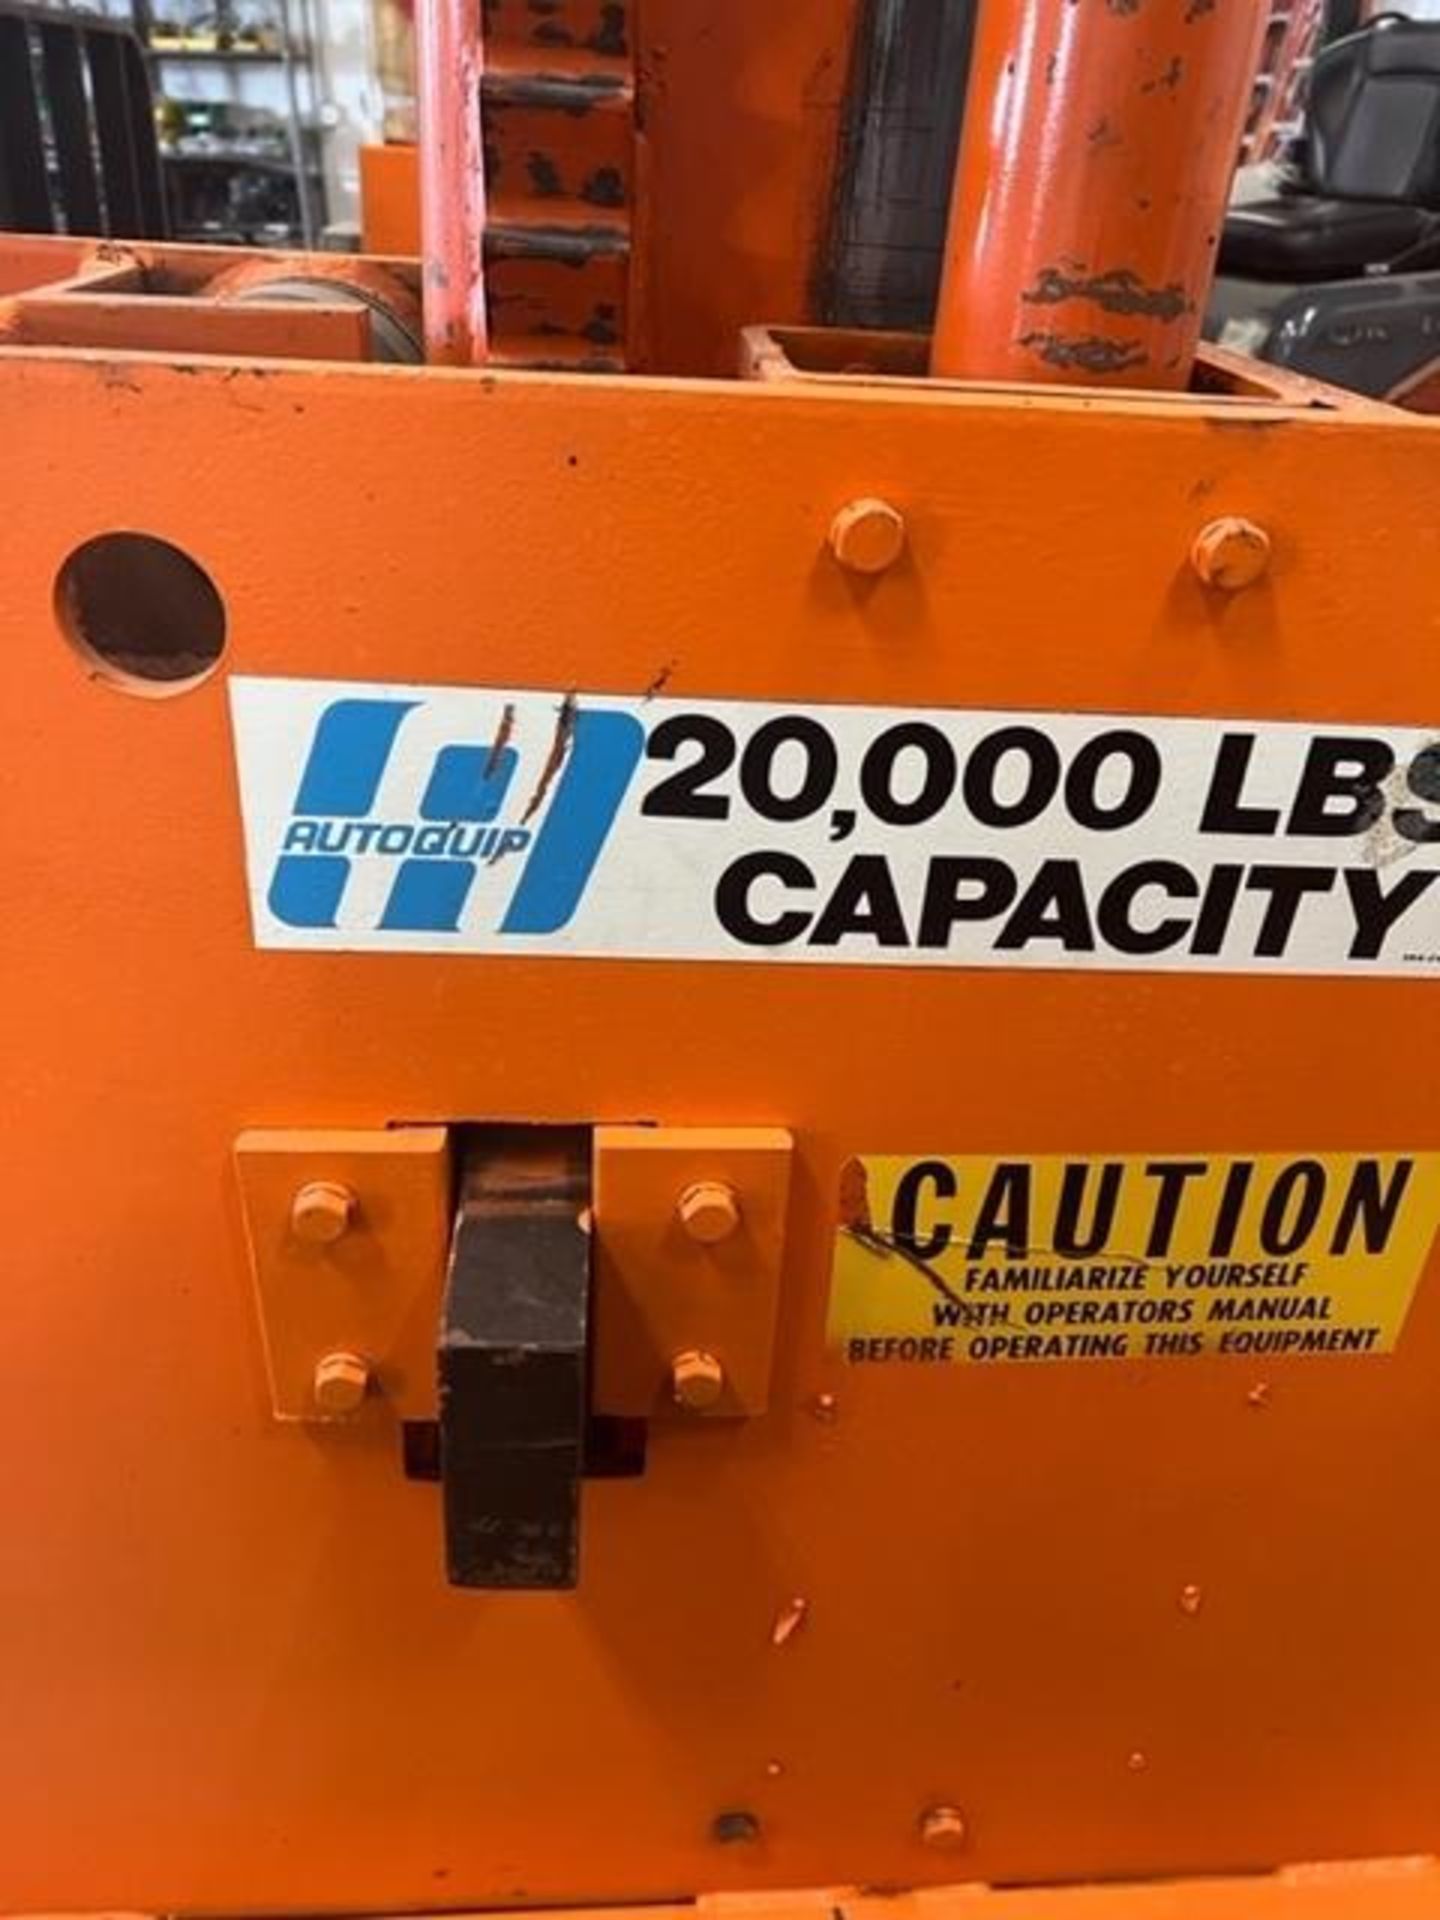 Autoquip 20,000 # Capacity Hoise. Peoria, IL - Image 2 of 20